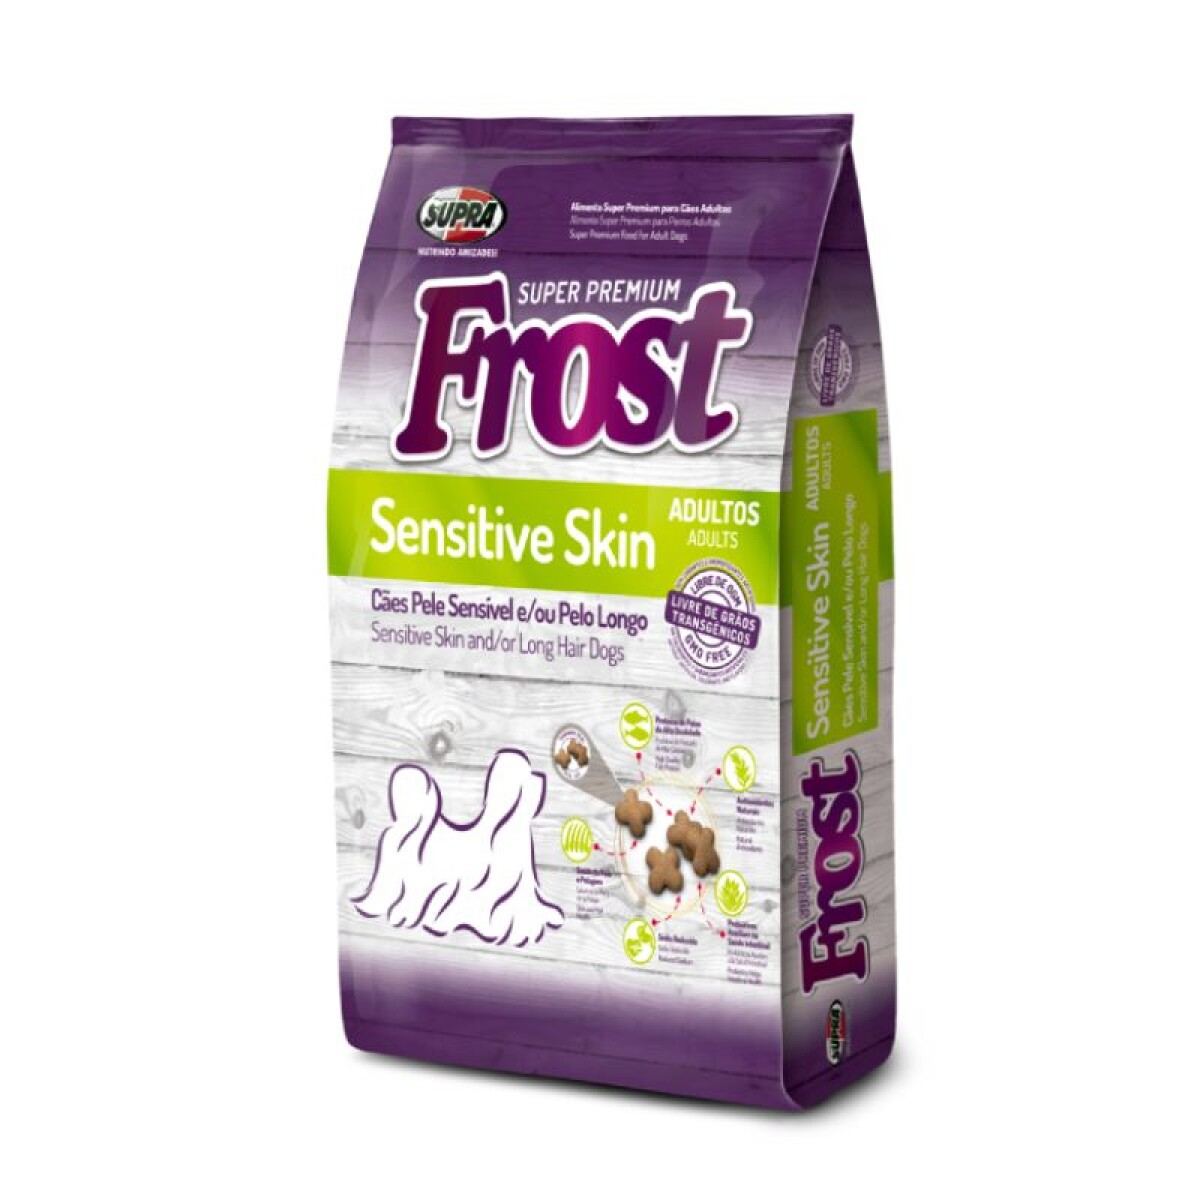 FROST SENSITIVE SKIN 1KG - Frost Sensitive Skin 1kg 